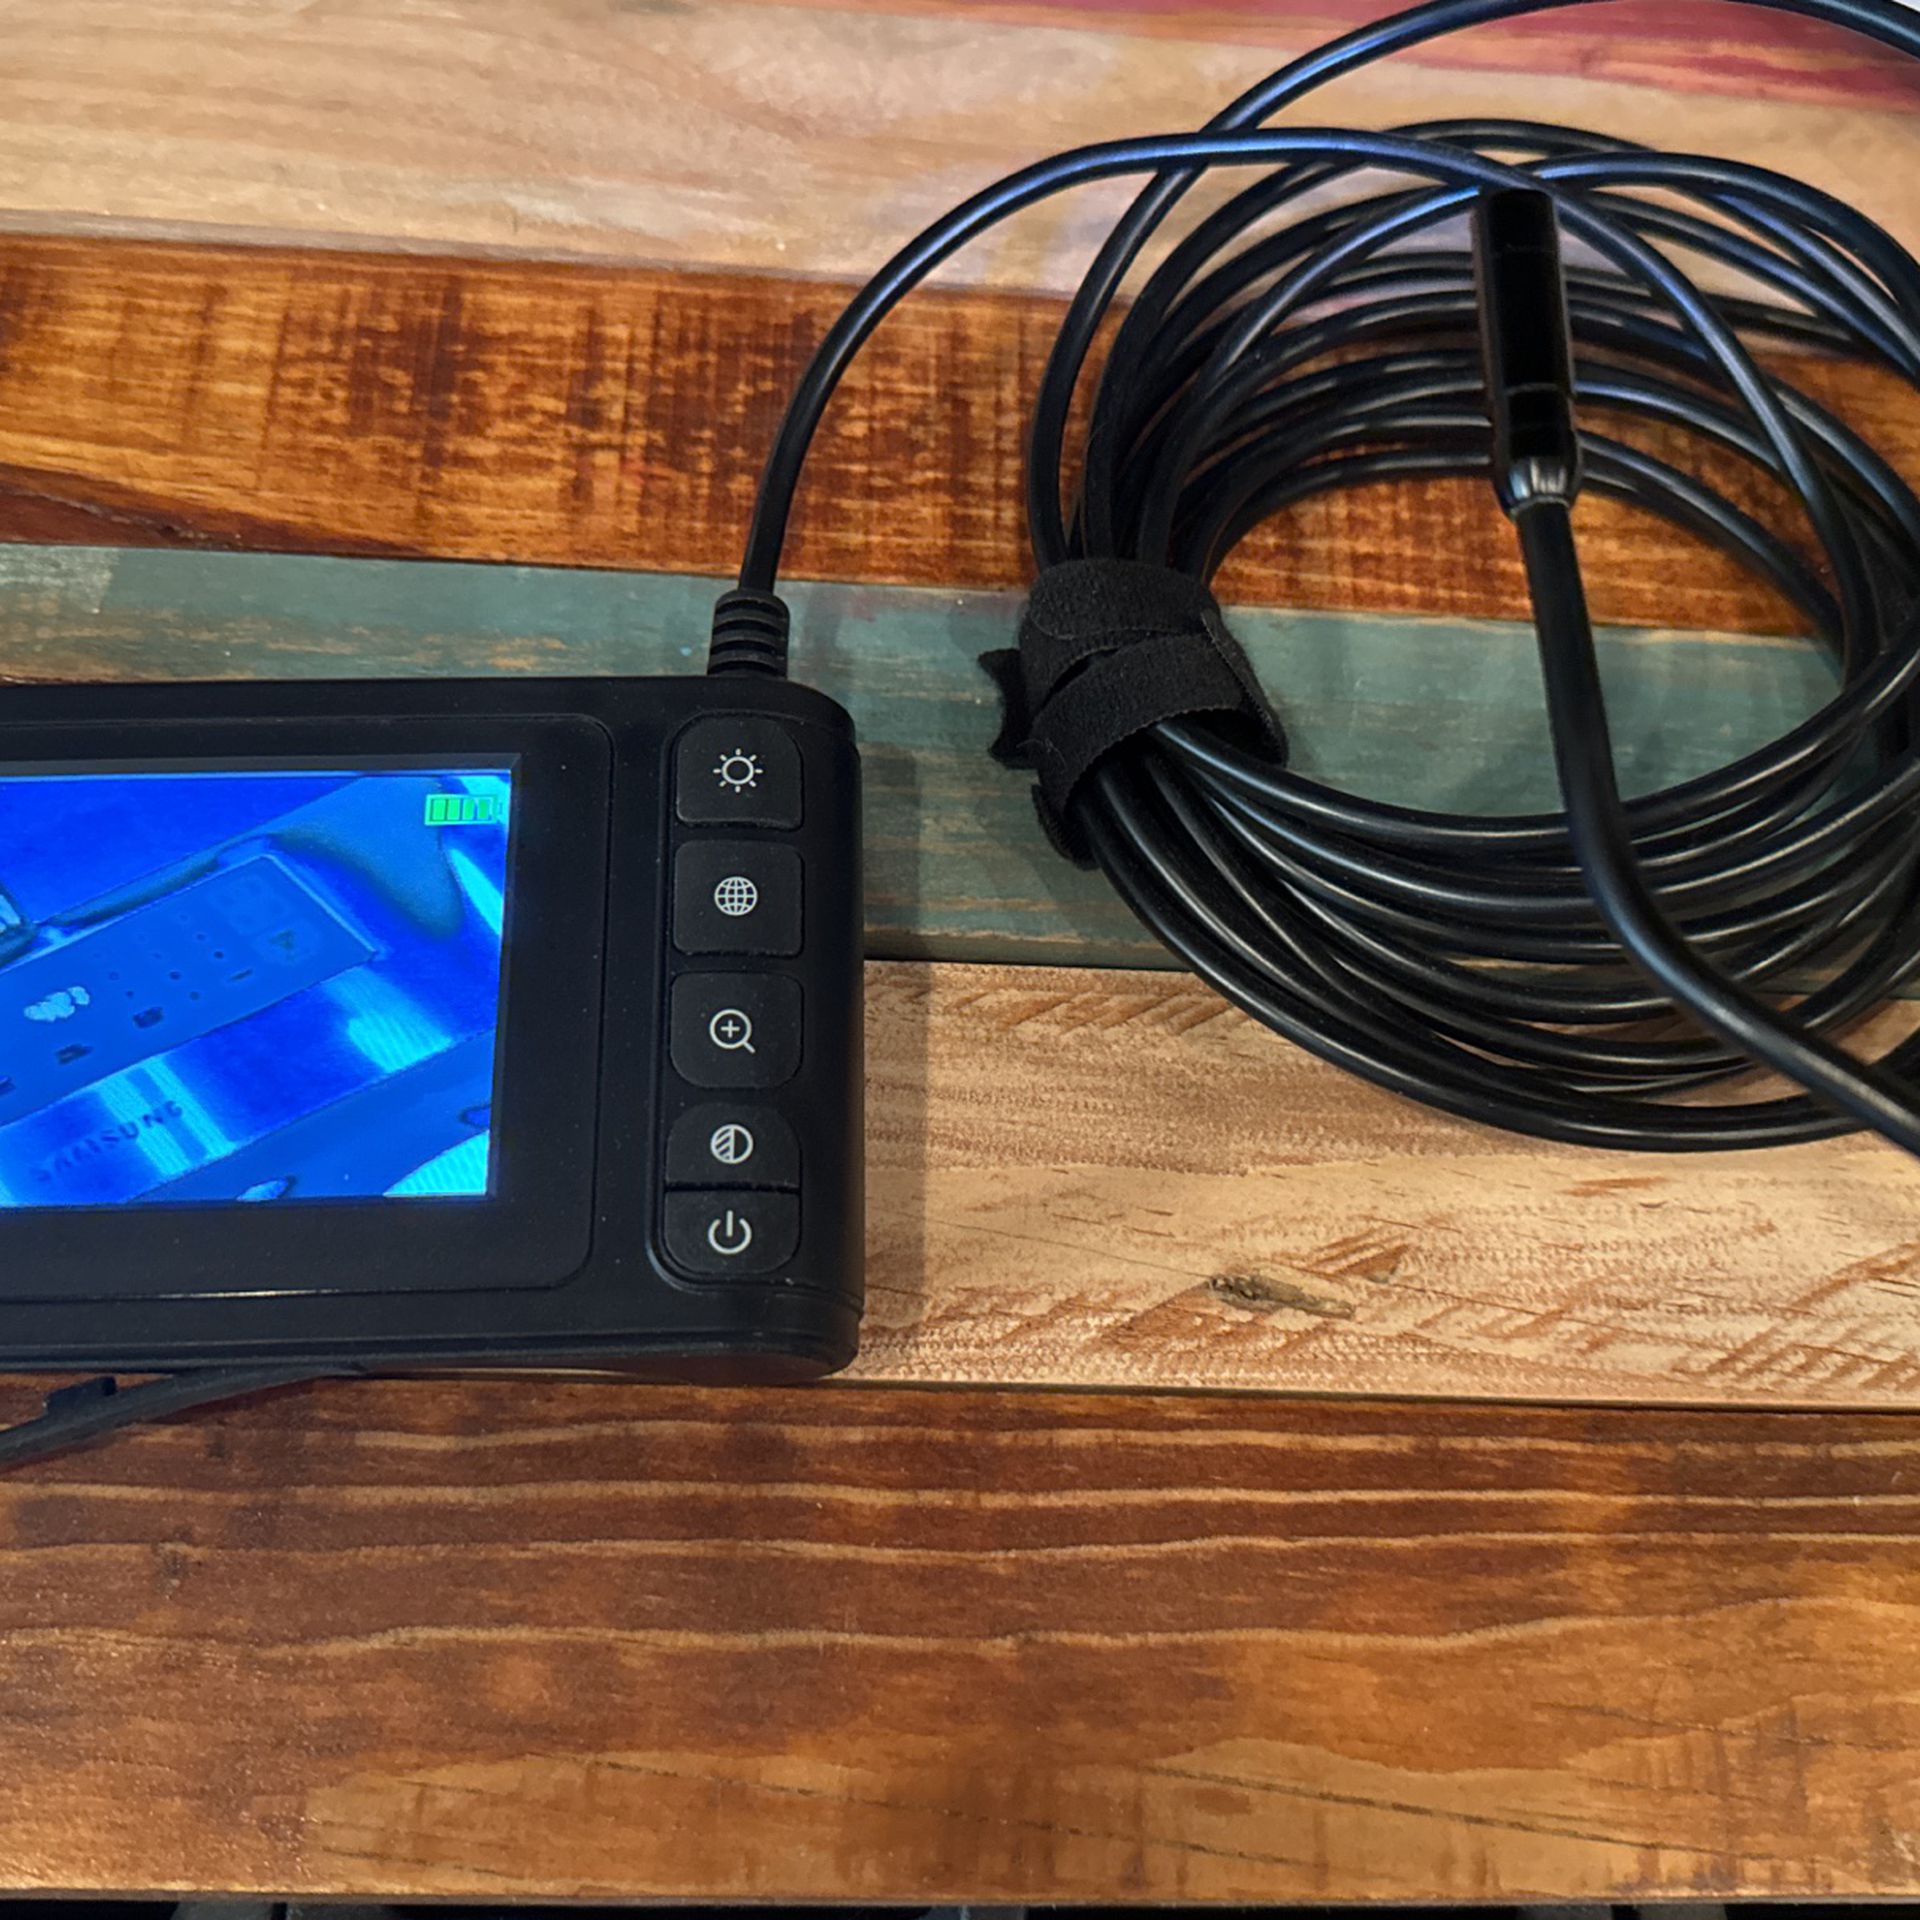 Professional Endoscope/Bore Scope 4.5” LCD Color Screen